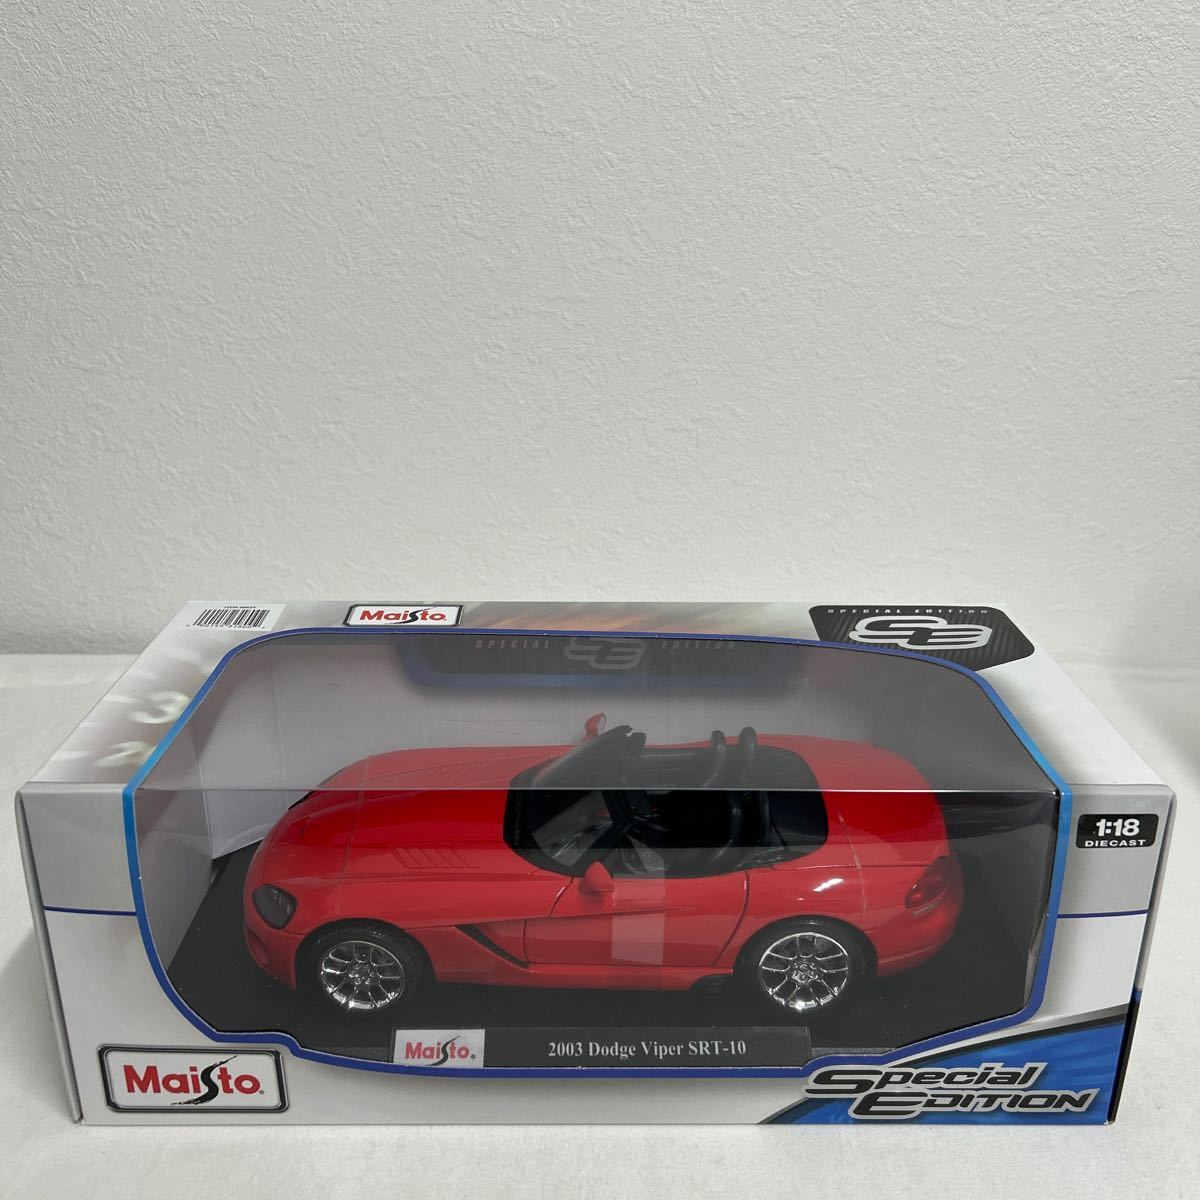 Maisto Special Edition 1/18 Dodge Viper SRT10 Red マイスト SE ダッジ バイパー 2003 アメ車 ミニカー モデルカー_画像3